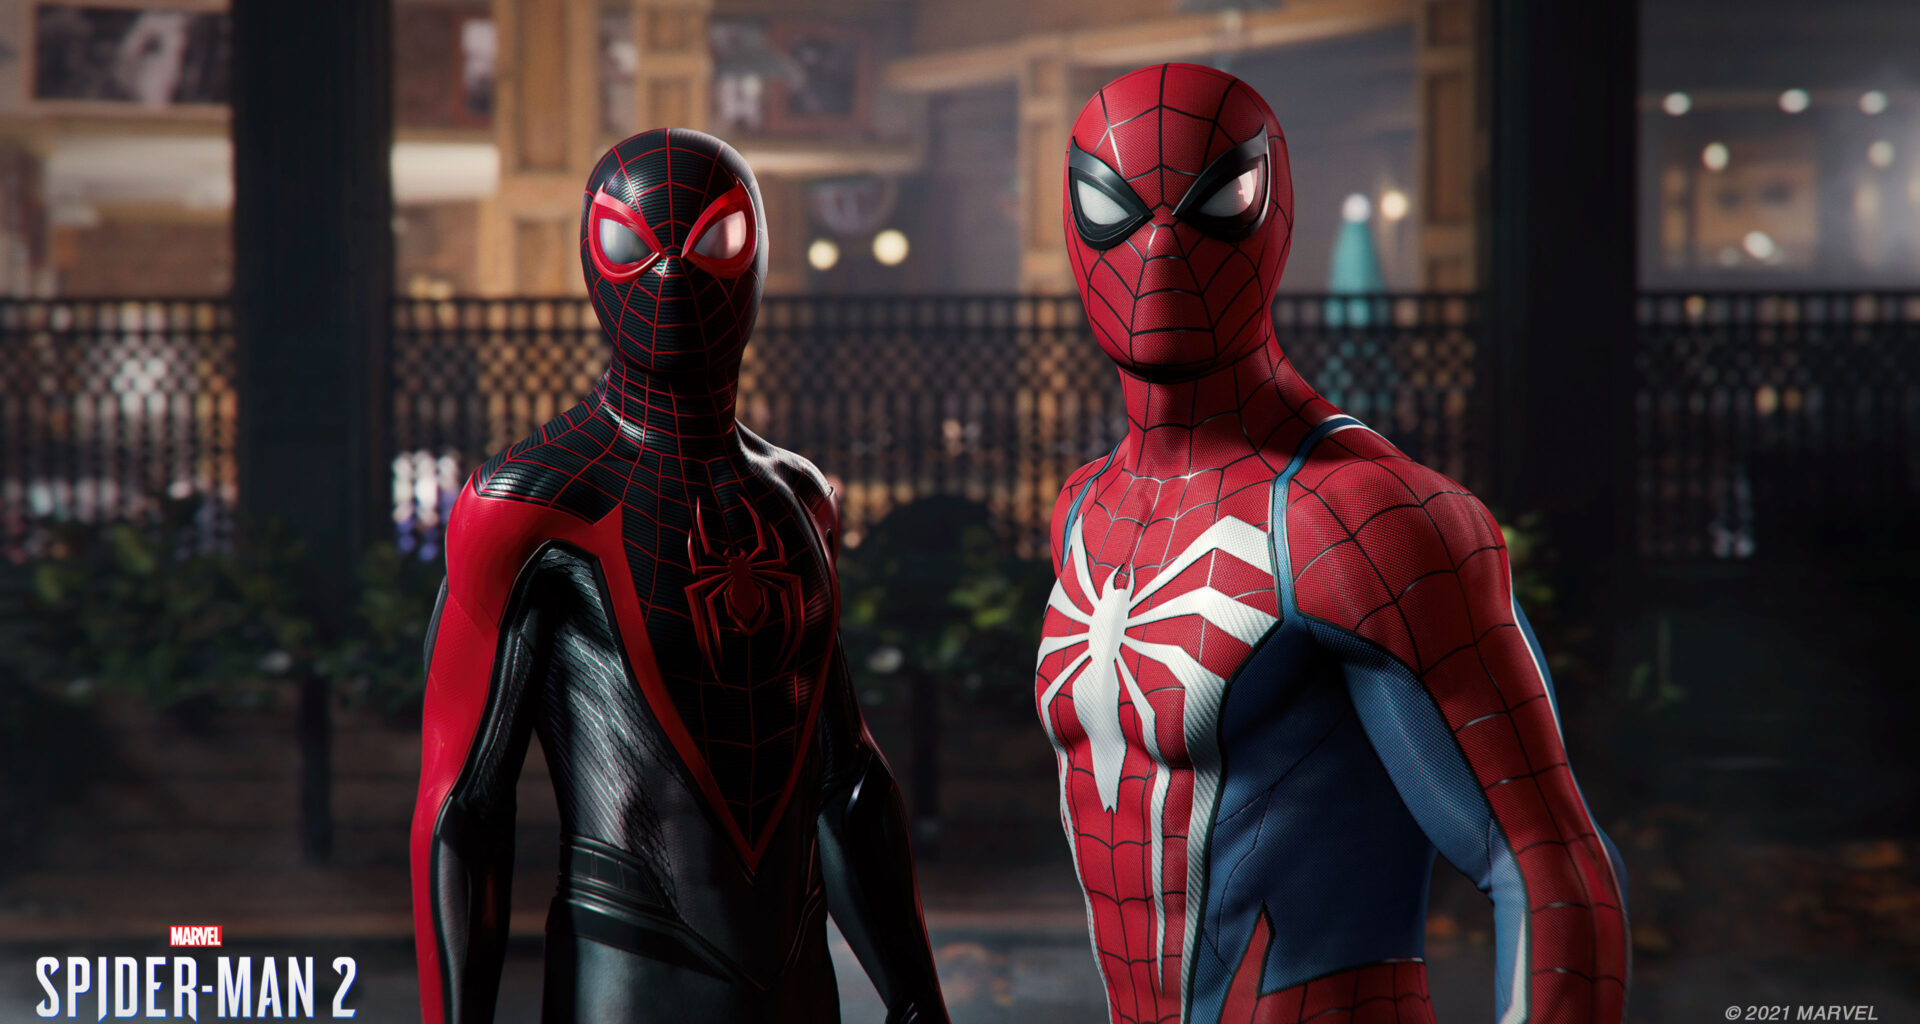 Screenshot aus dem Spiel Marvel's Spider-Man 2, zu sehen sind Miles Morales und Peter Parker in ihren Spider-Man-Kostümen.